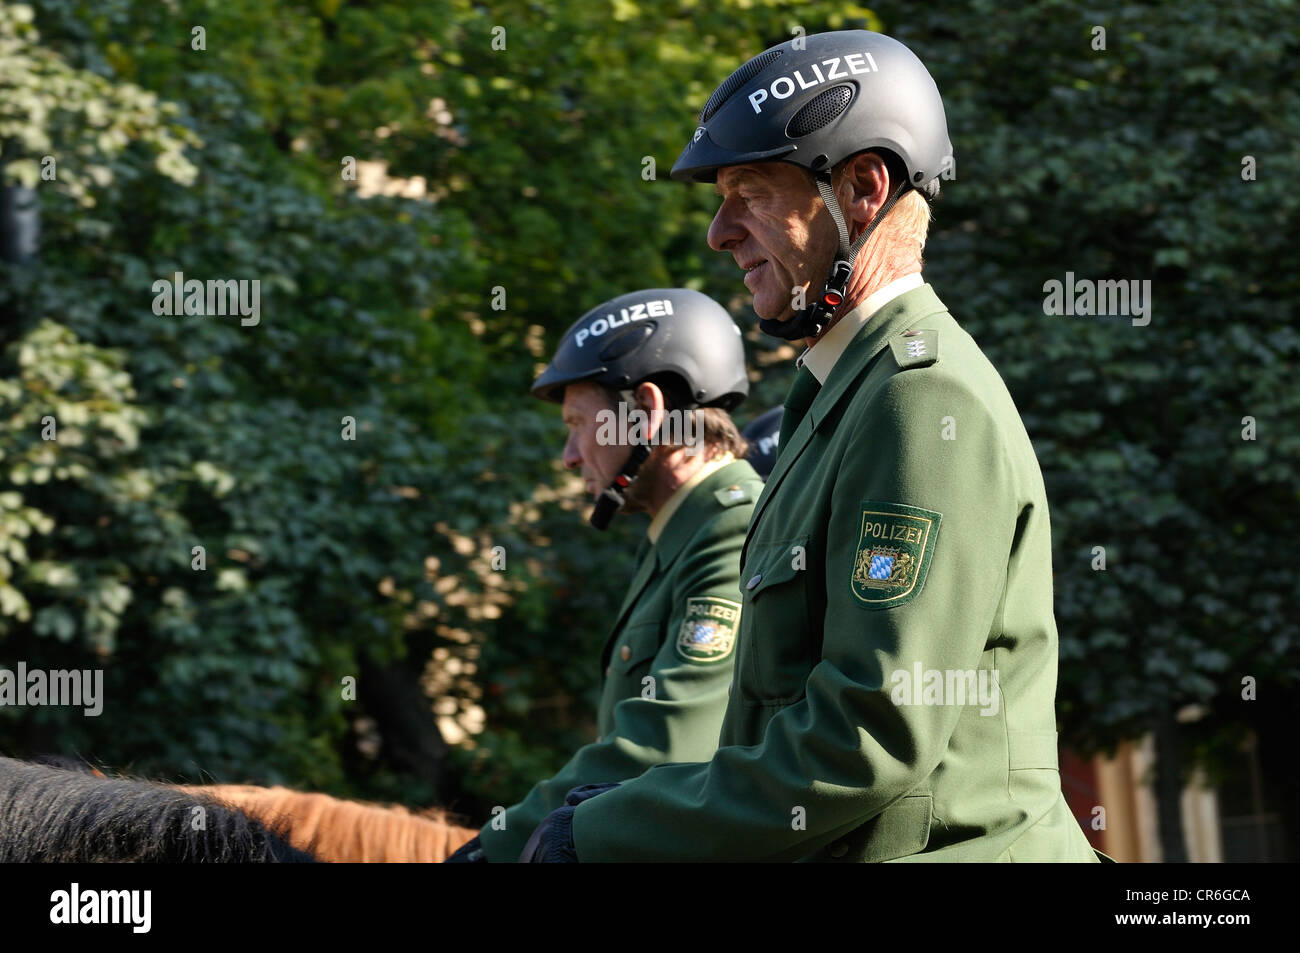 Polizei Team Reiten, Münchner Polizei Hauptquartier, während Schuetzen-Und Trachtenzug, Kostüm und schützen die Parade für die Stockfoto